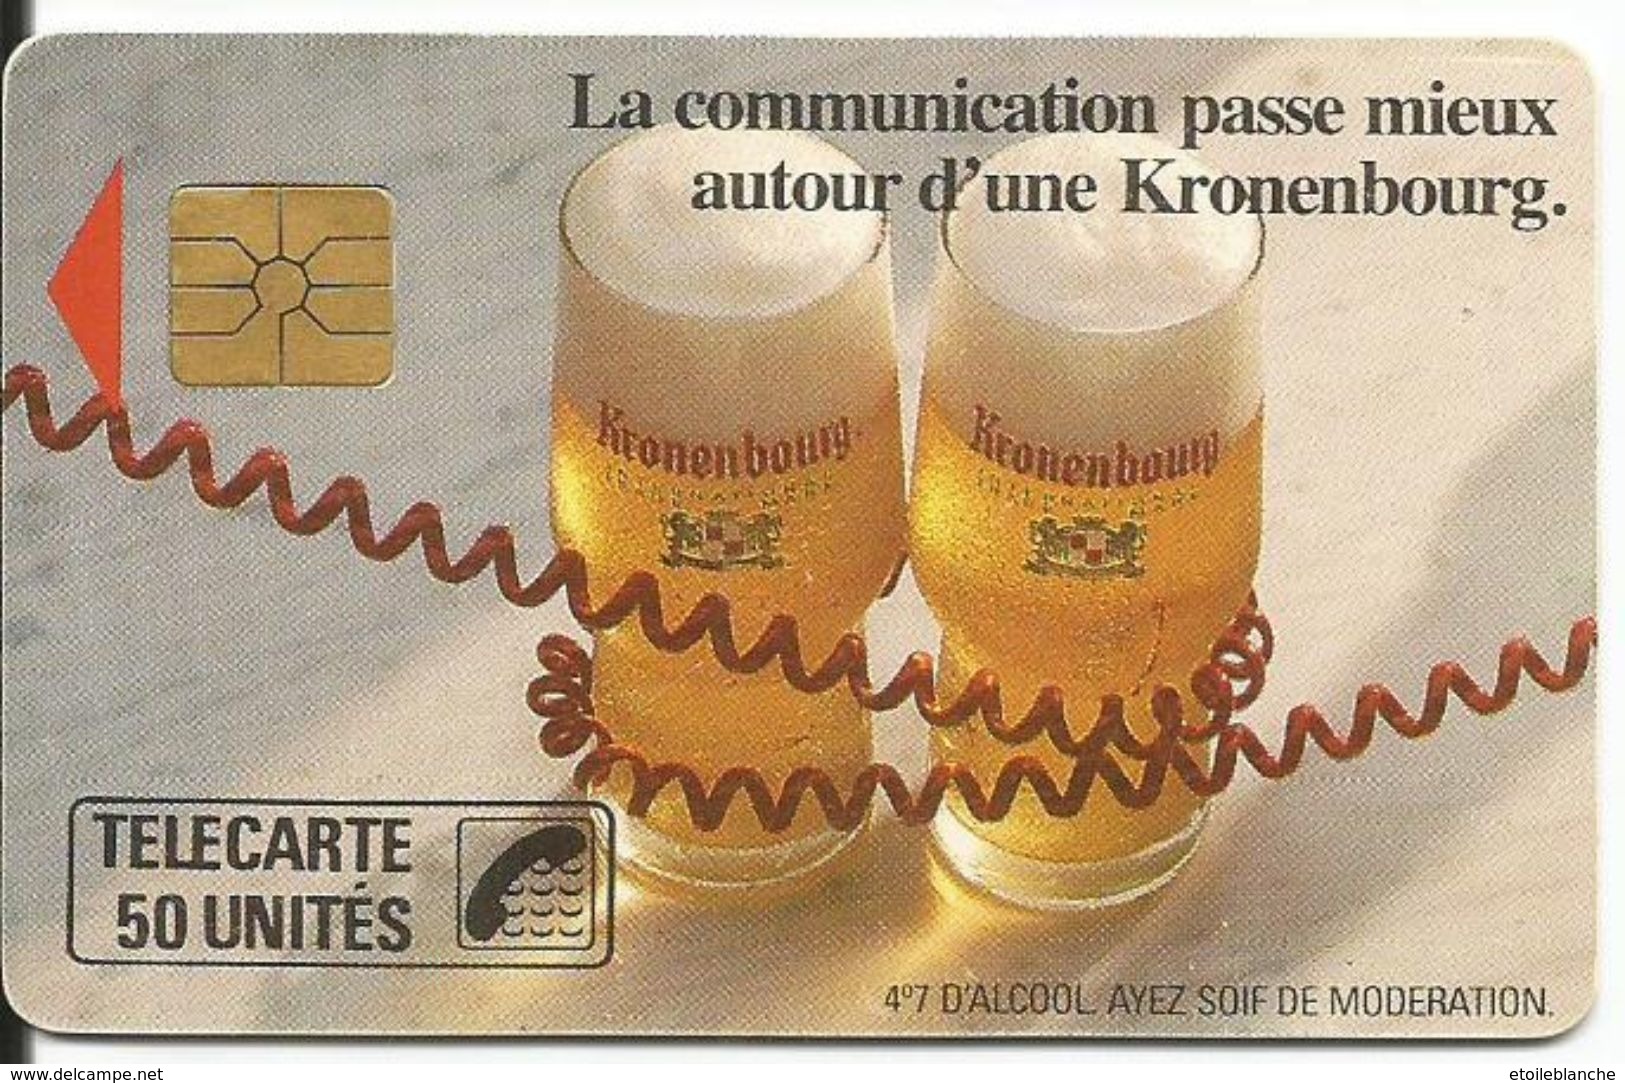 Telecarte Publicité, Bière Kronenbourg (alcool, Ayez Soif De Modération) - La Communication Passe Mieux (fil Téléphone) - Advertising